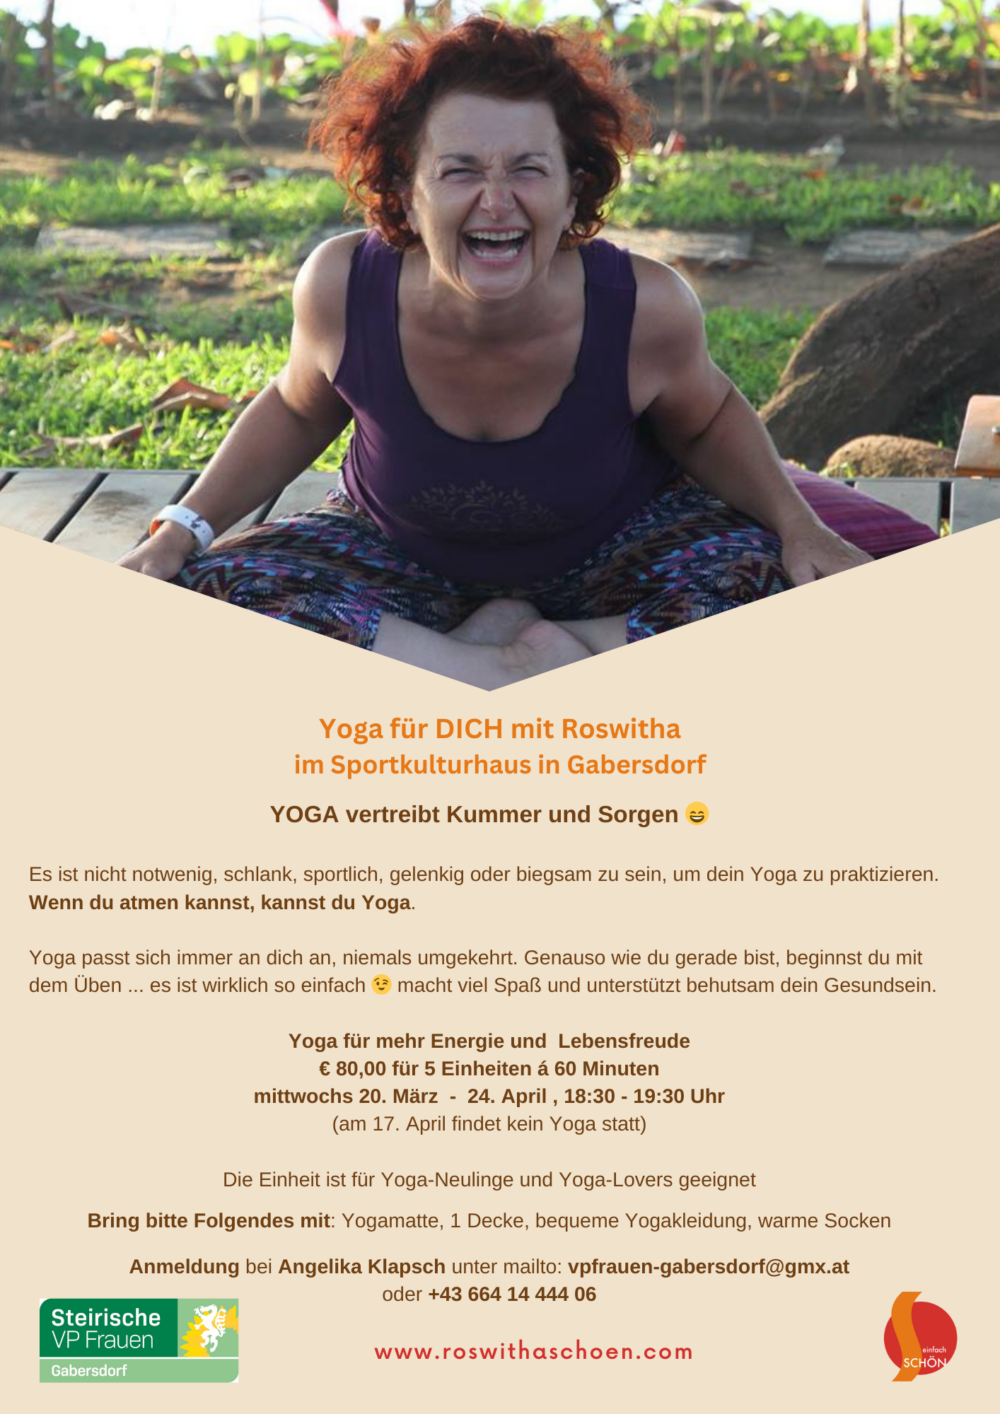 YOGA vertreibt Kummer und Sorgen - Yoga für DICH im Sportkulturhaus in Gabersdorf